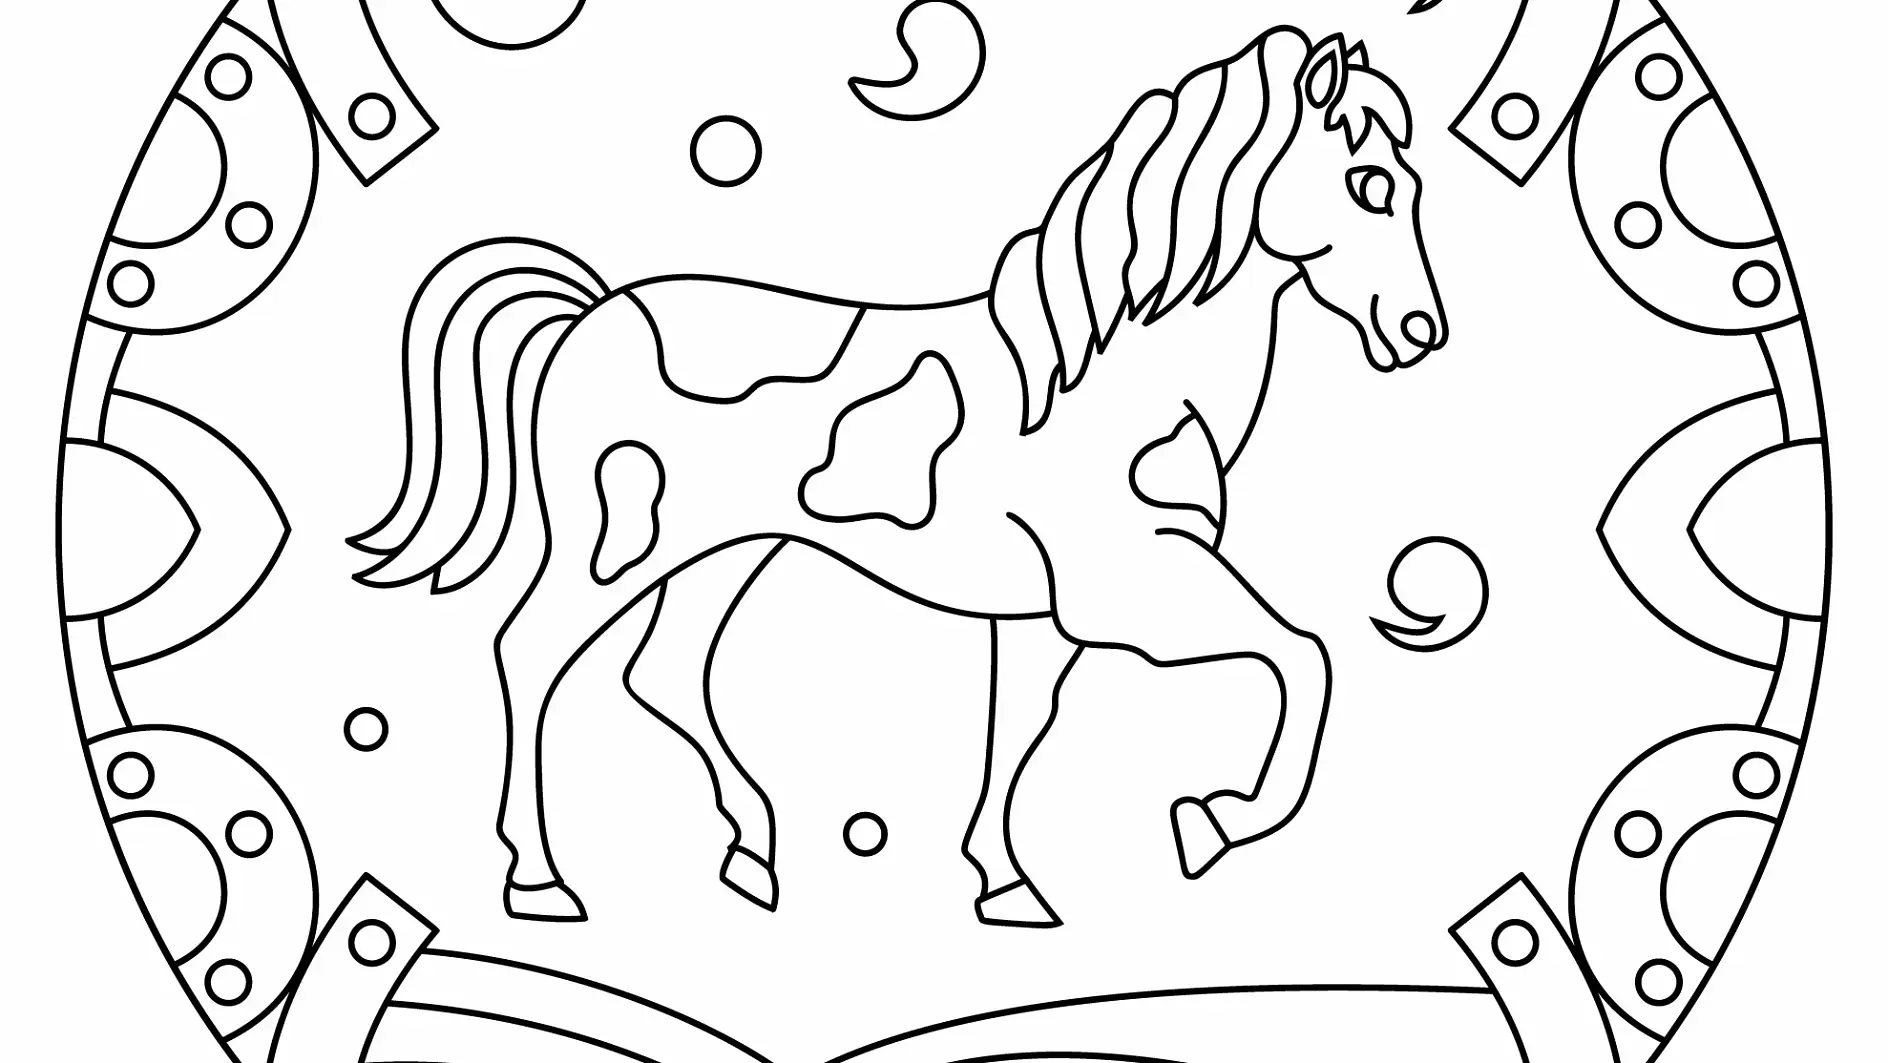 Ausmalbild Mandala mit Pferd und Hufeisenmuster